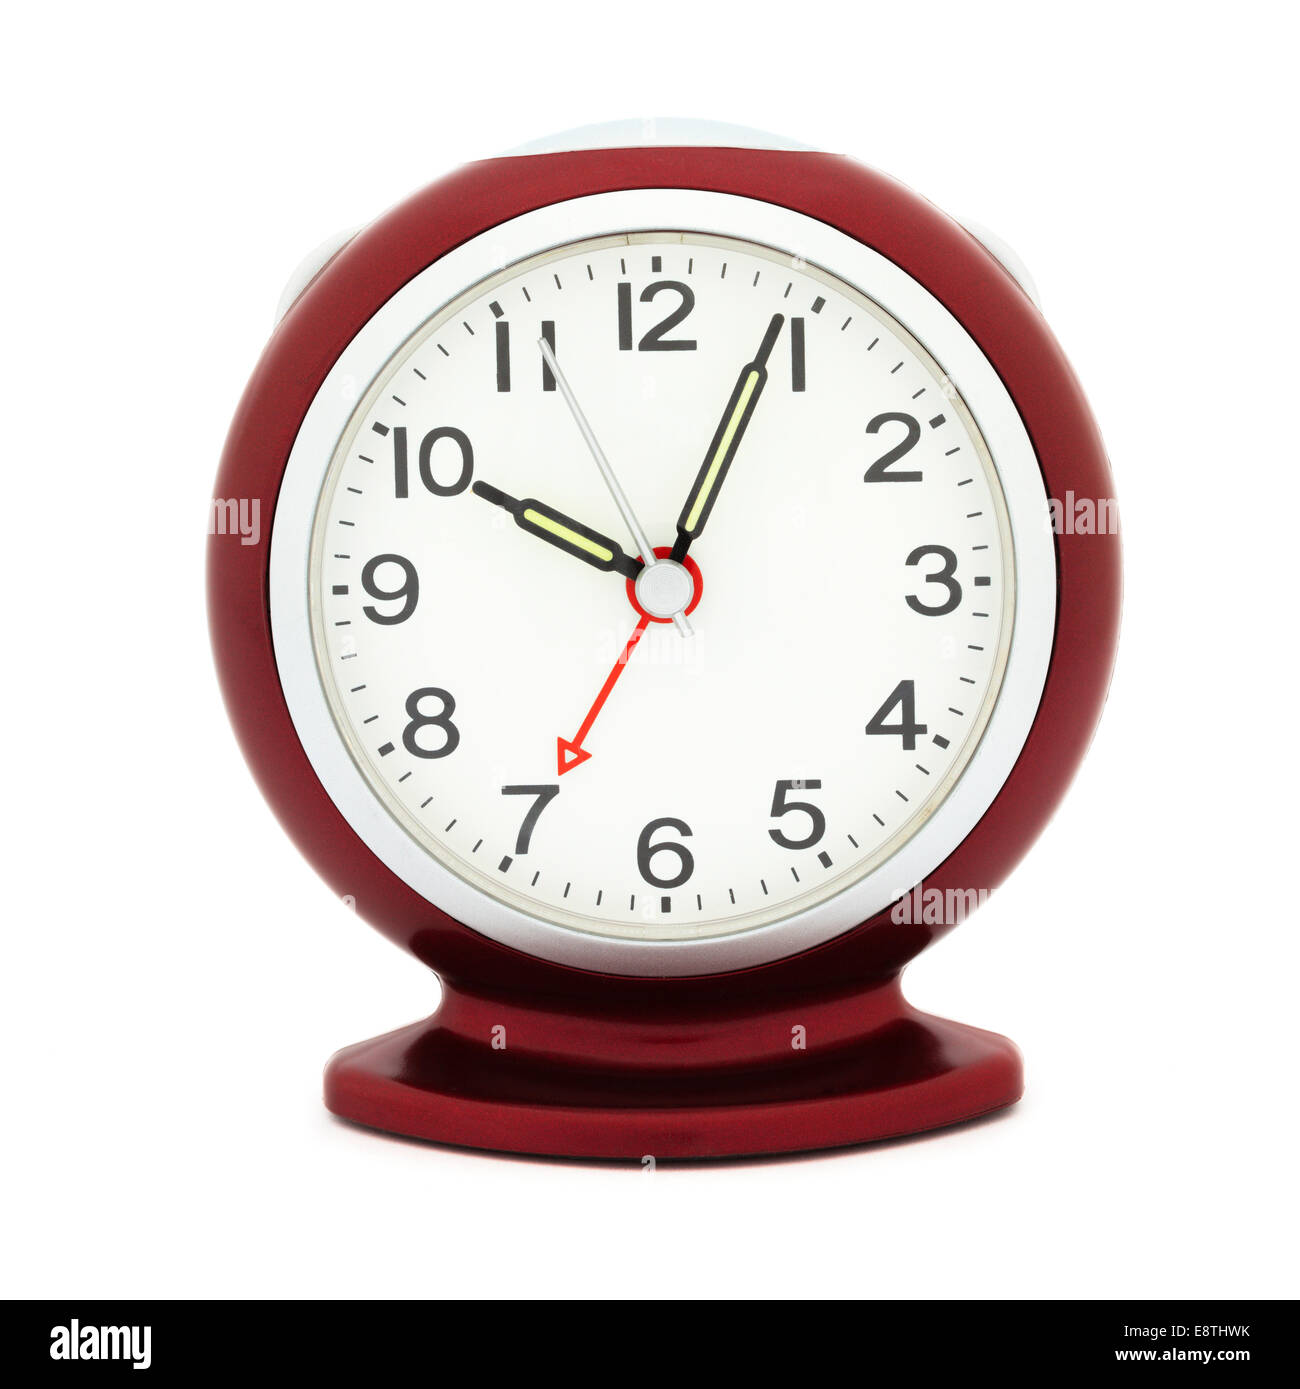 Réveil mécanique rouge lumineux avec des mains après 10 h dans un matin avec alarme fixé à 7 h temps d'illustrer mon retard concept Banque D'Images